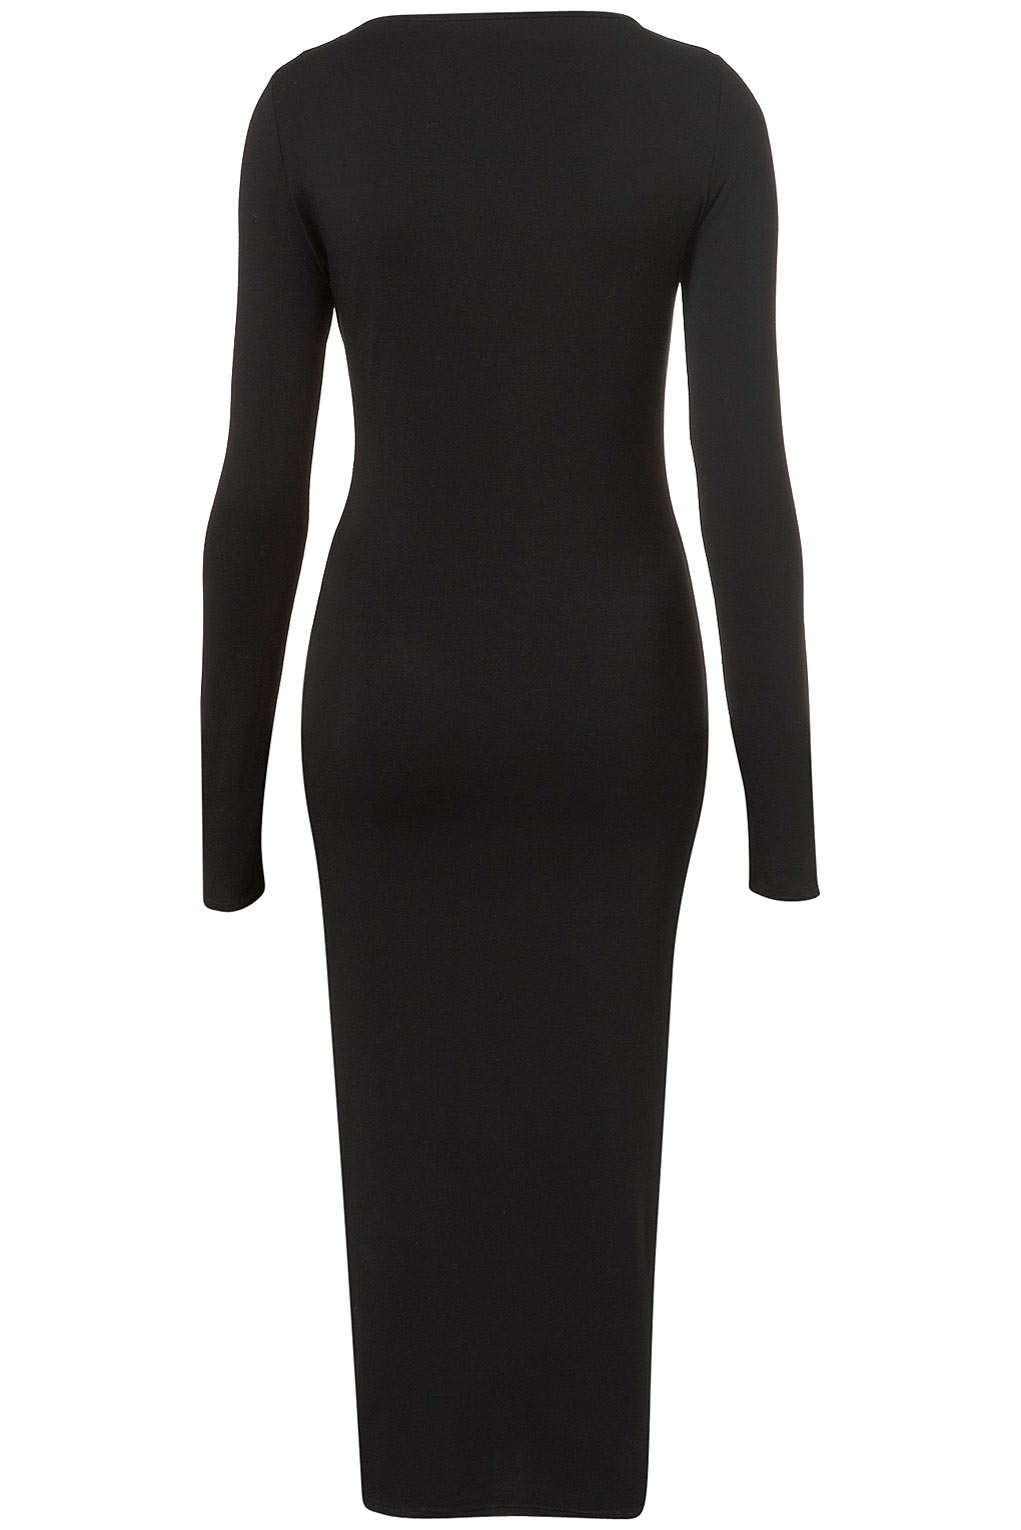 Topshop Tall Plain Midi Bodycon Dress in Black | Lyst